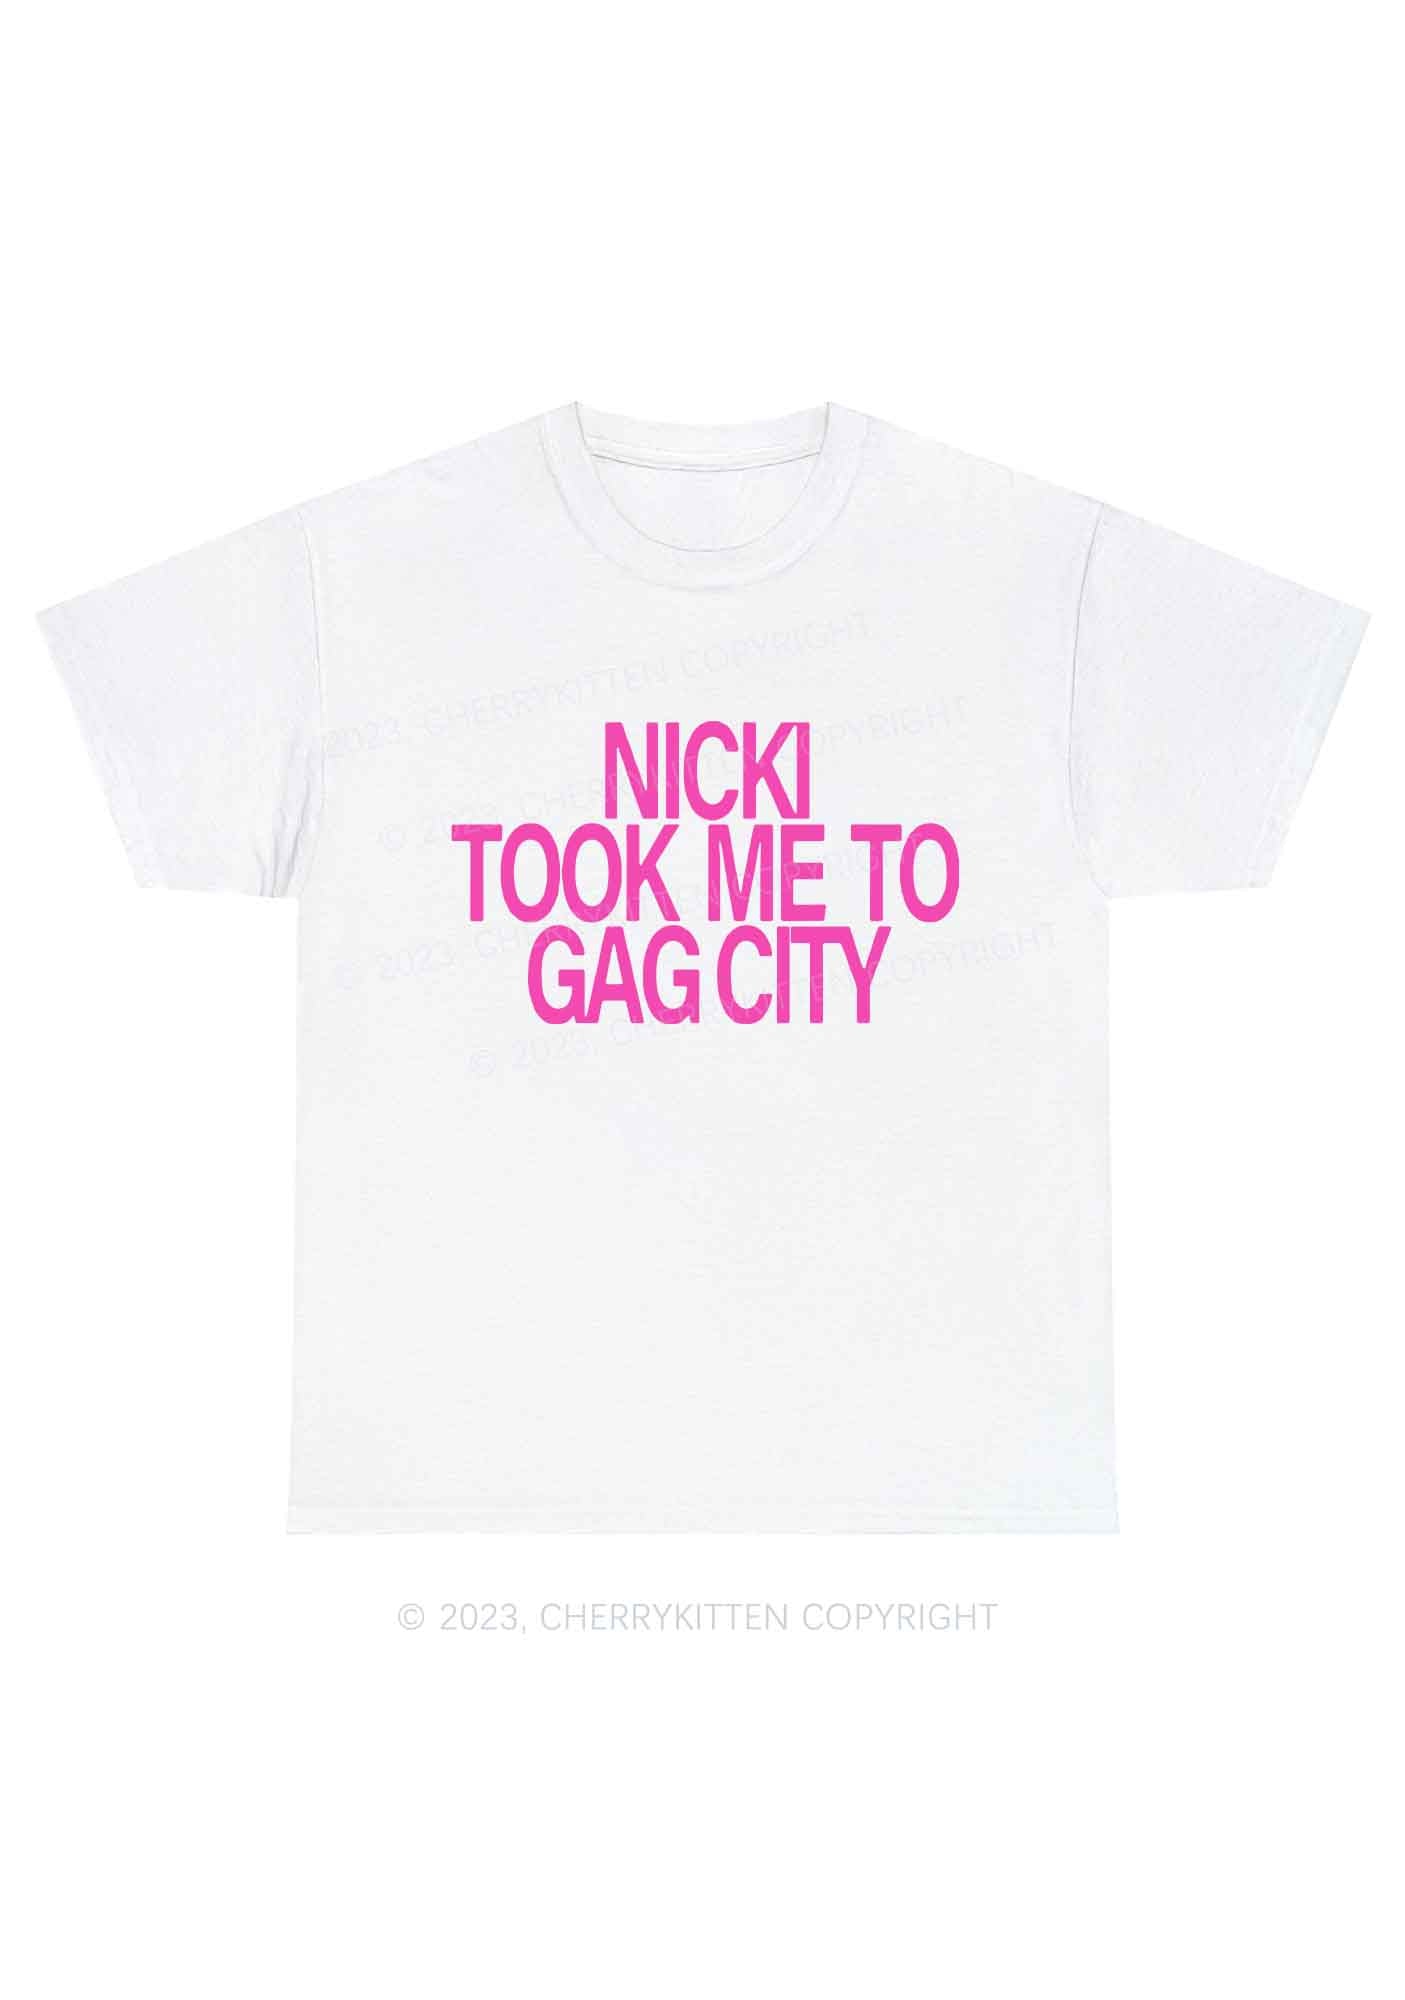 Took Me To Gag City Y2K Chunky Shirt Cherrykitten